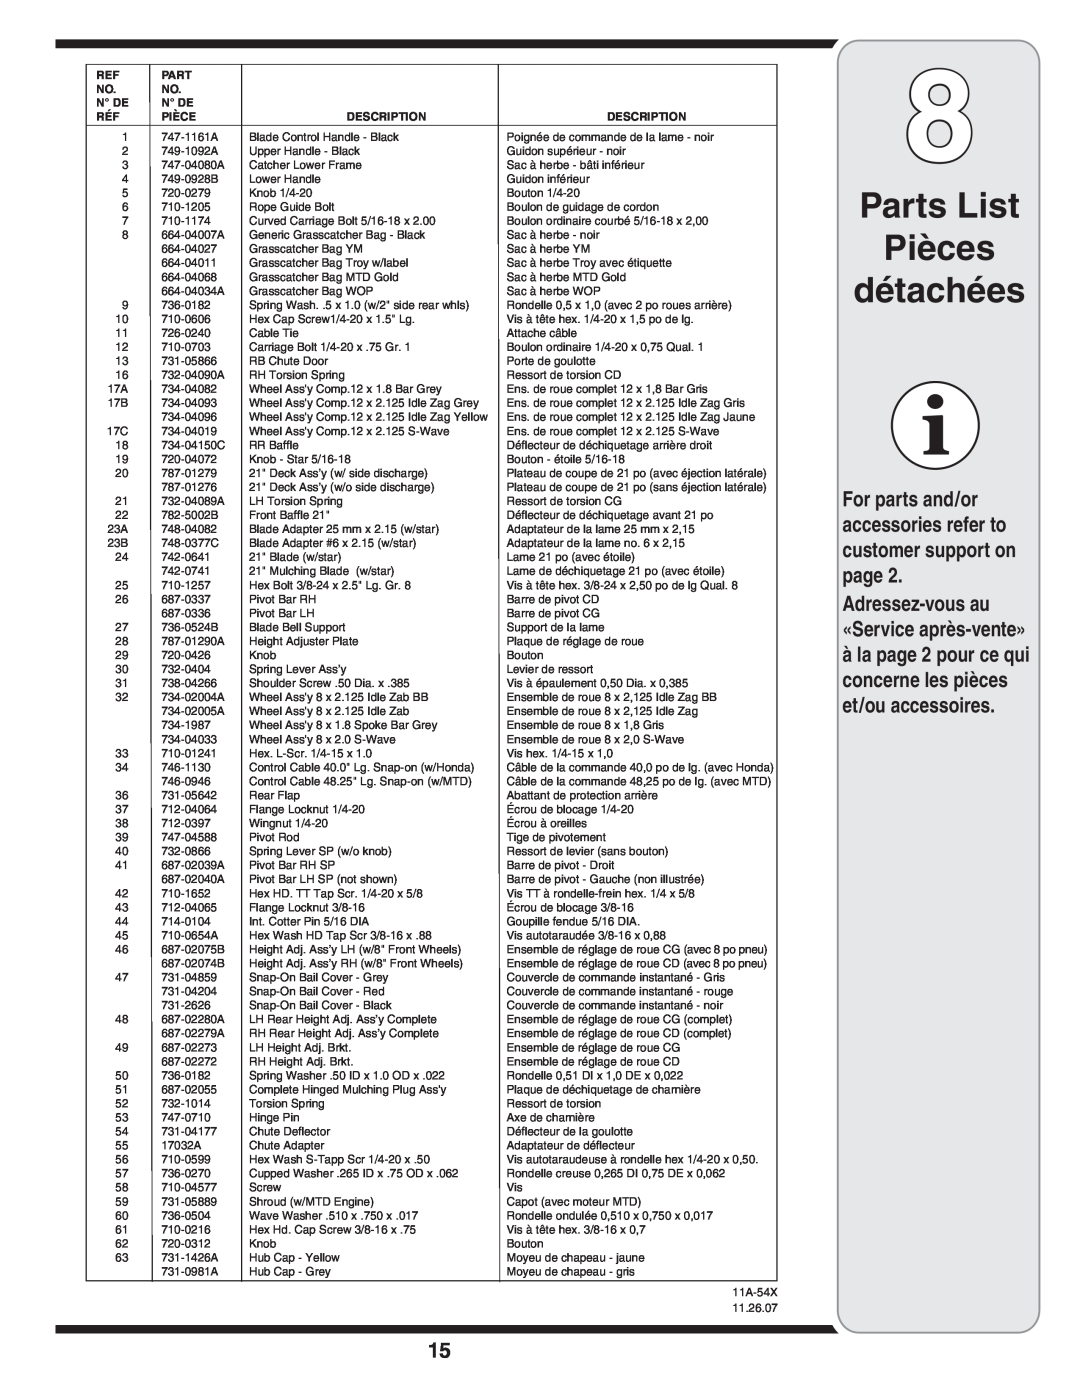 Columbian Home Products 540 Parts List Pièces détachées, à la page 2 pour ce qui concerne les pièces et/ou accessoires 